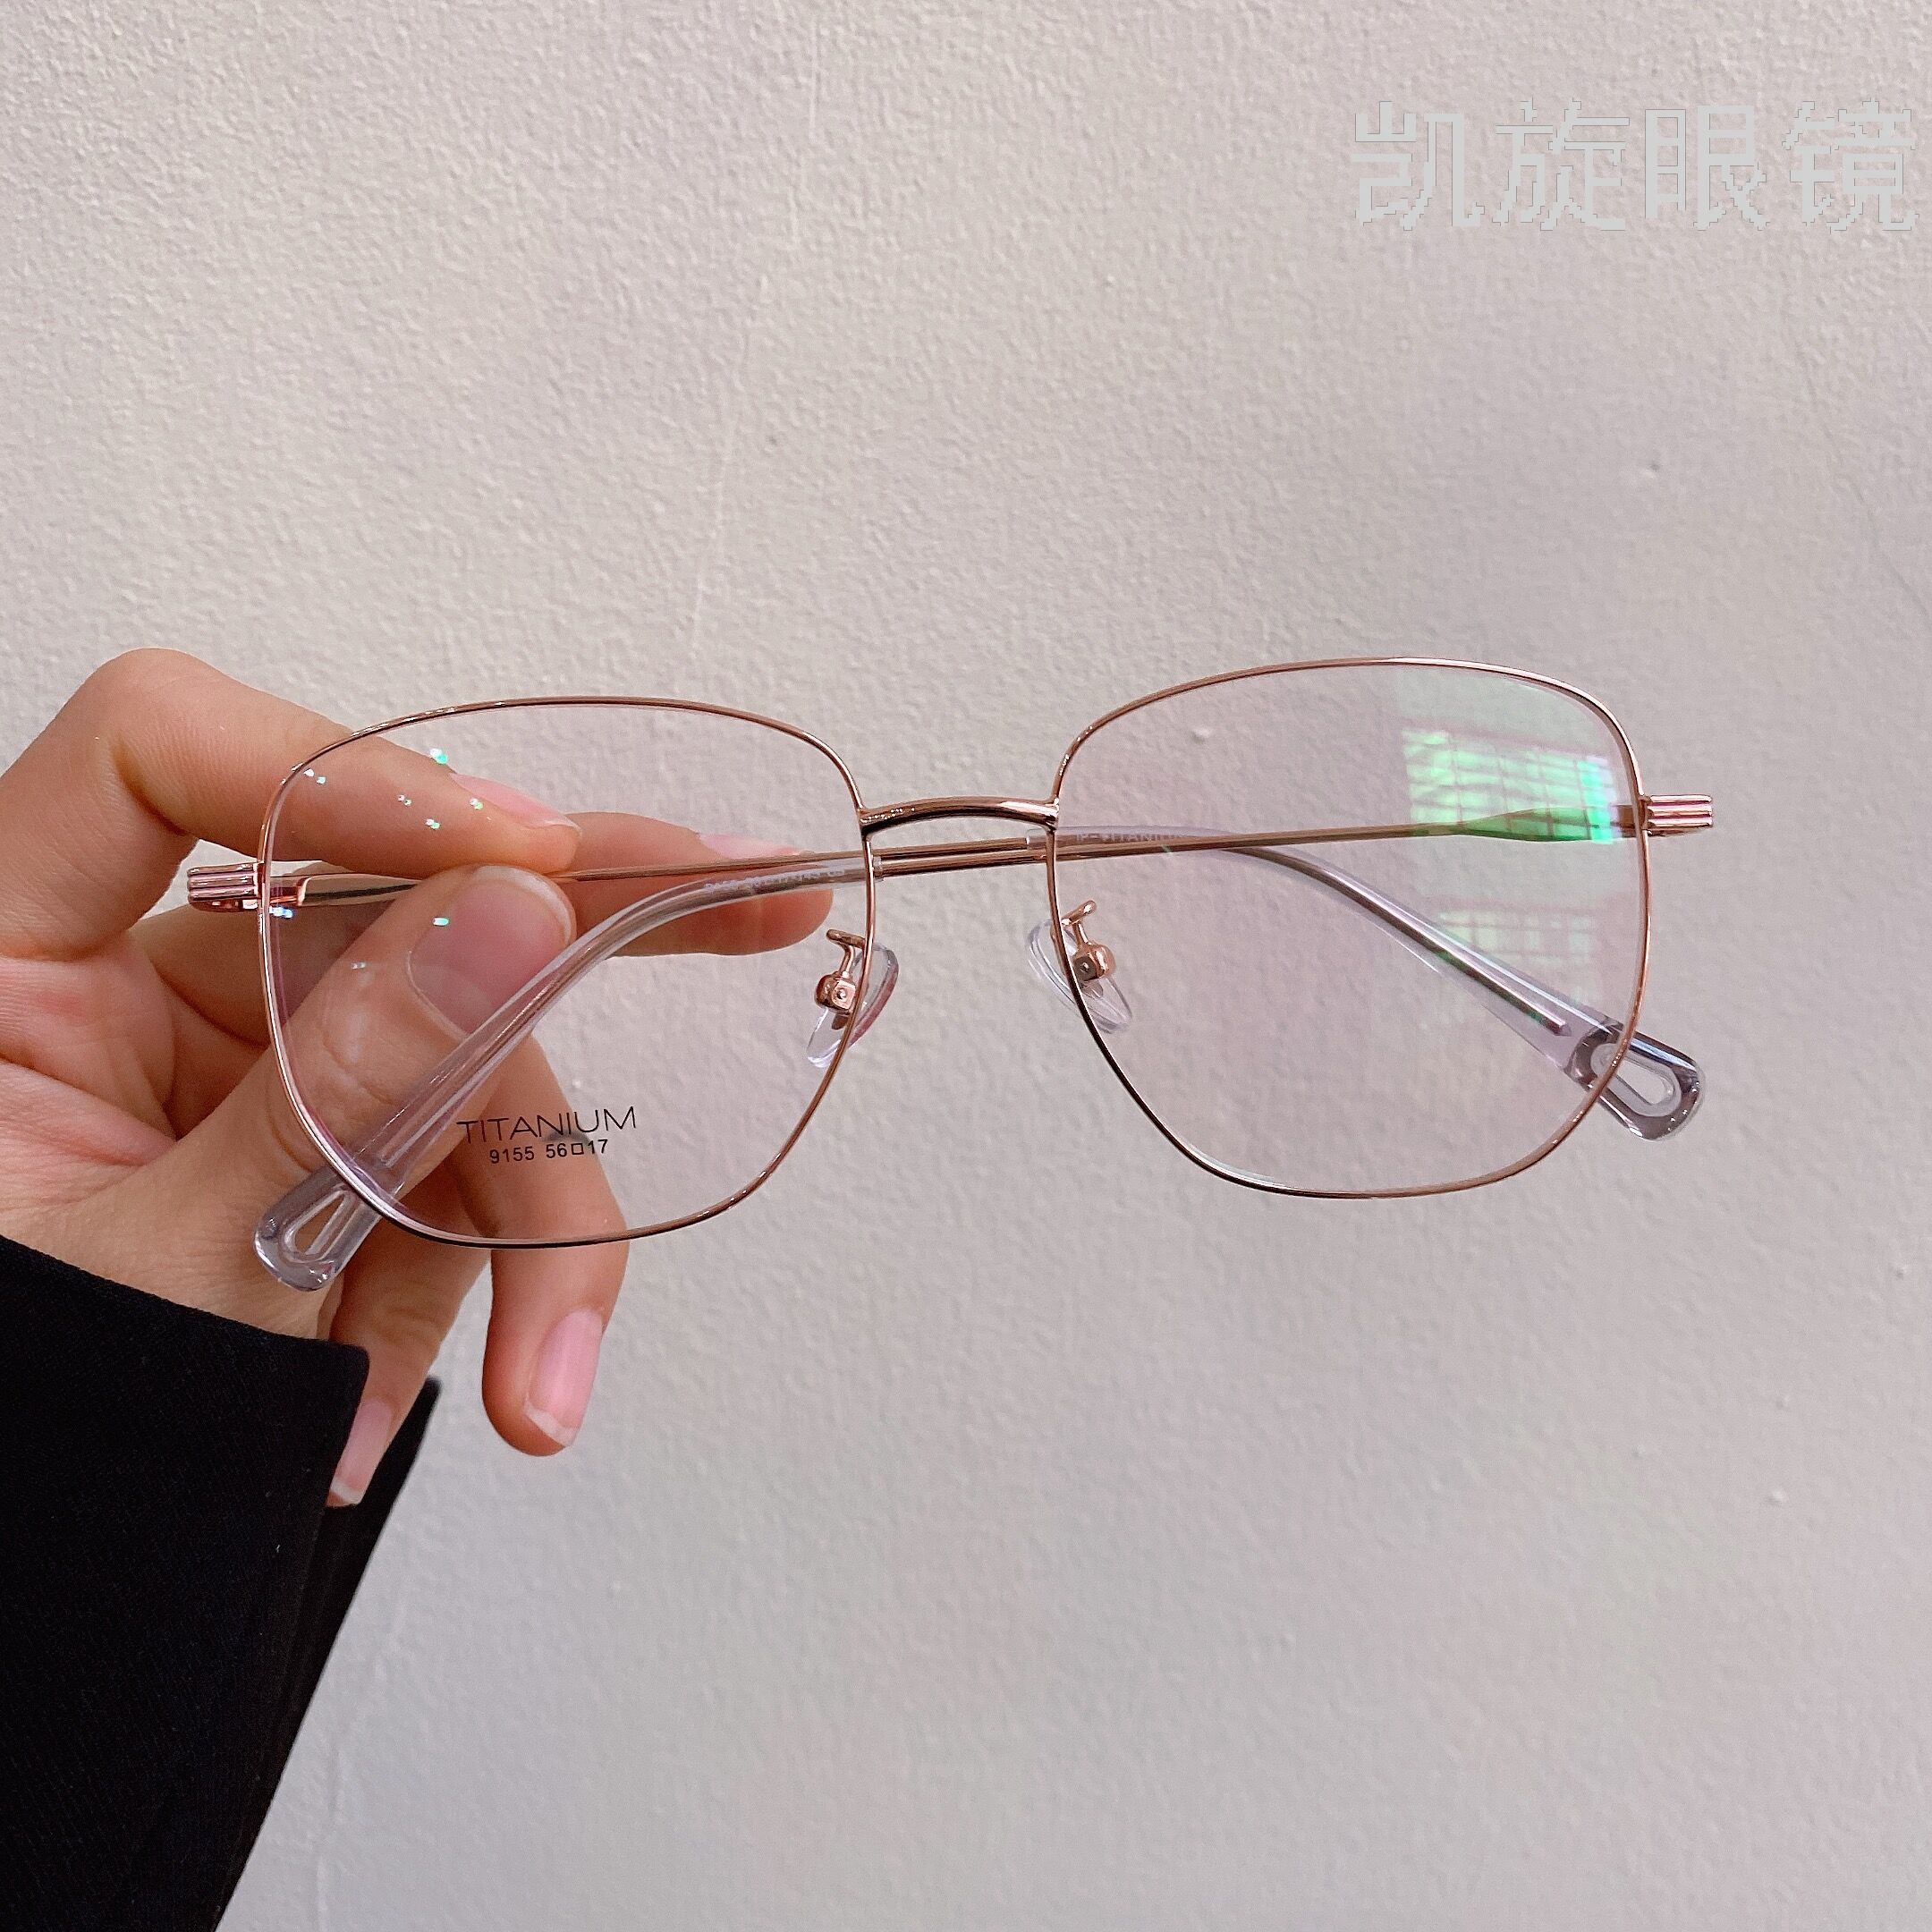 平光镜文艺金属圆框平光镜男女款学生眼镜架清新护目镜-阿里巴巴